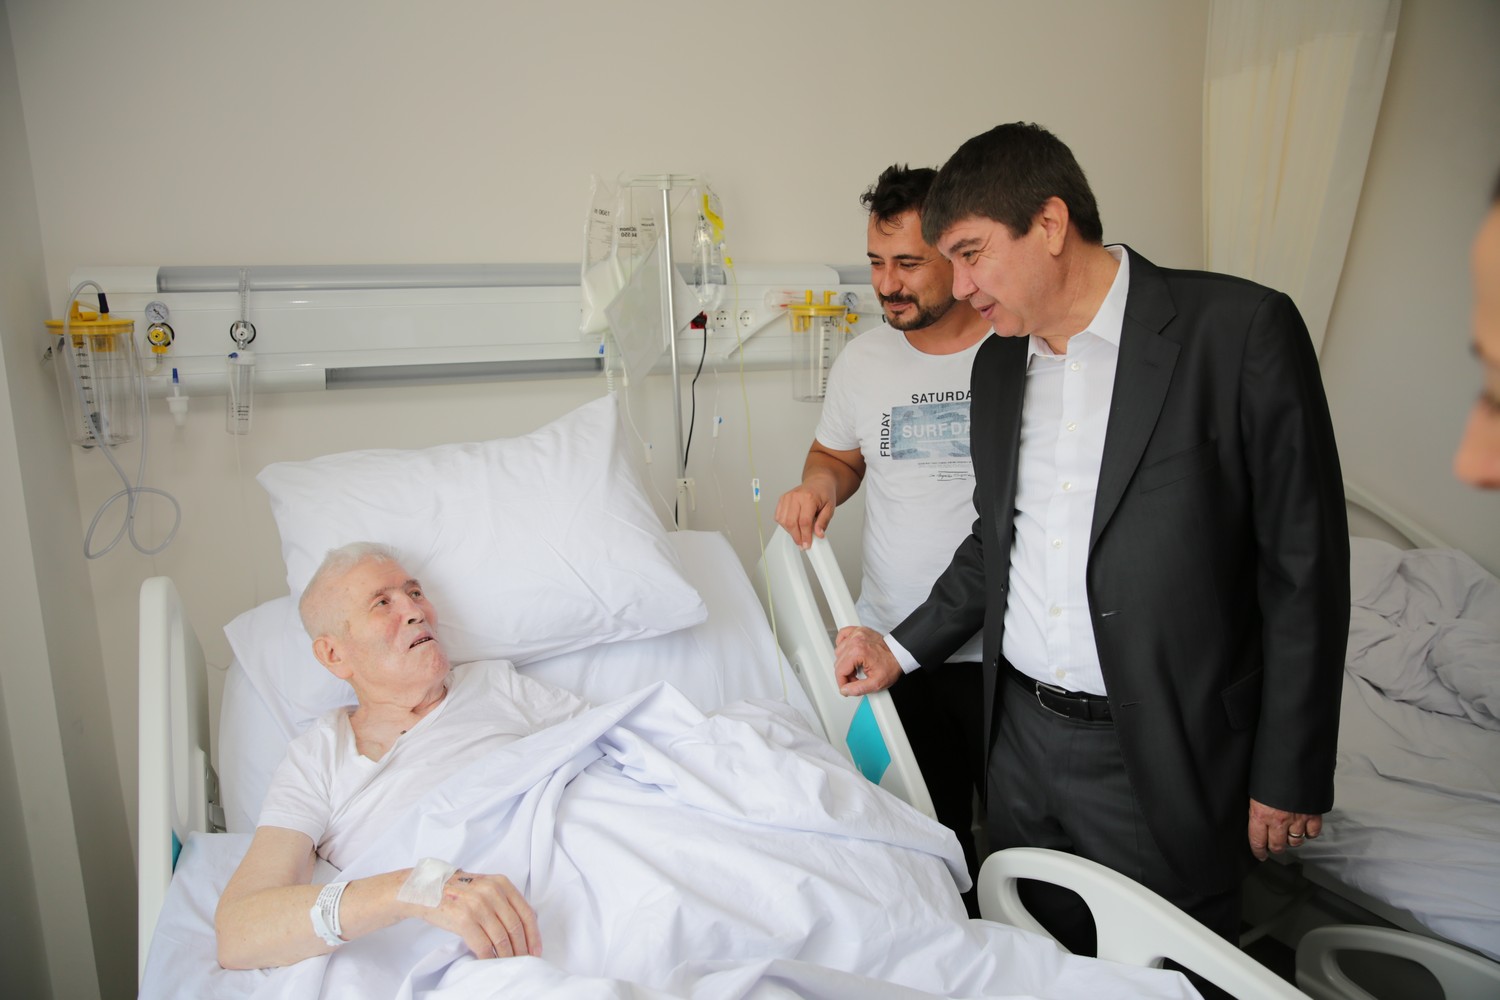 hasta ziyaretinde hastaya yapilan dua hakkinda bilgi